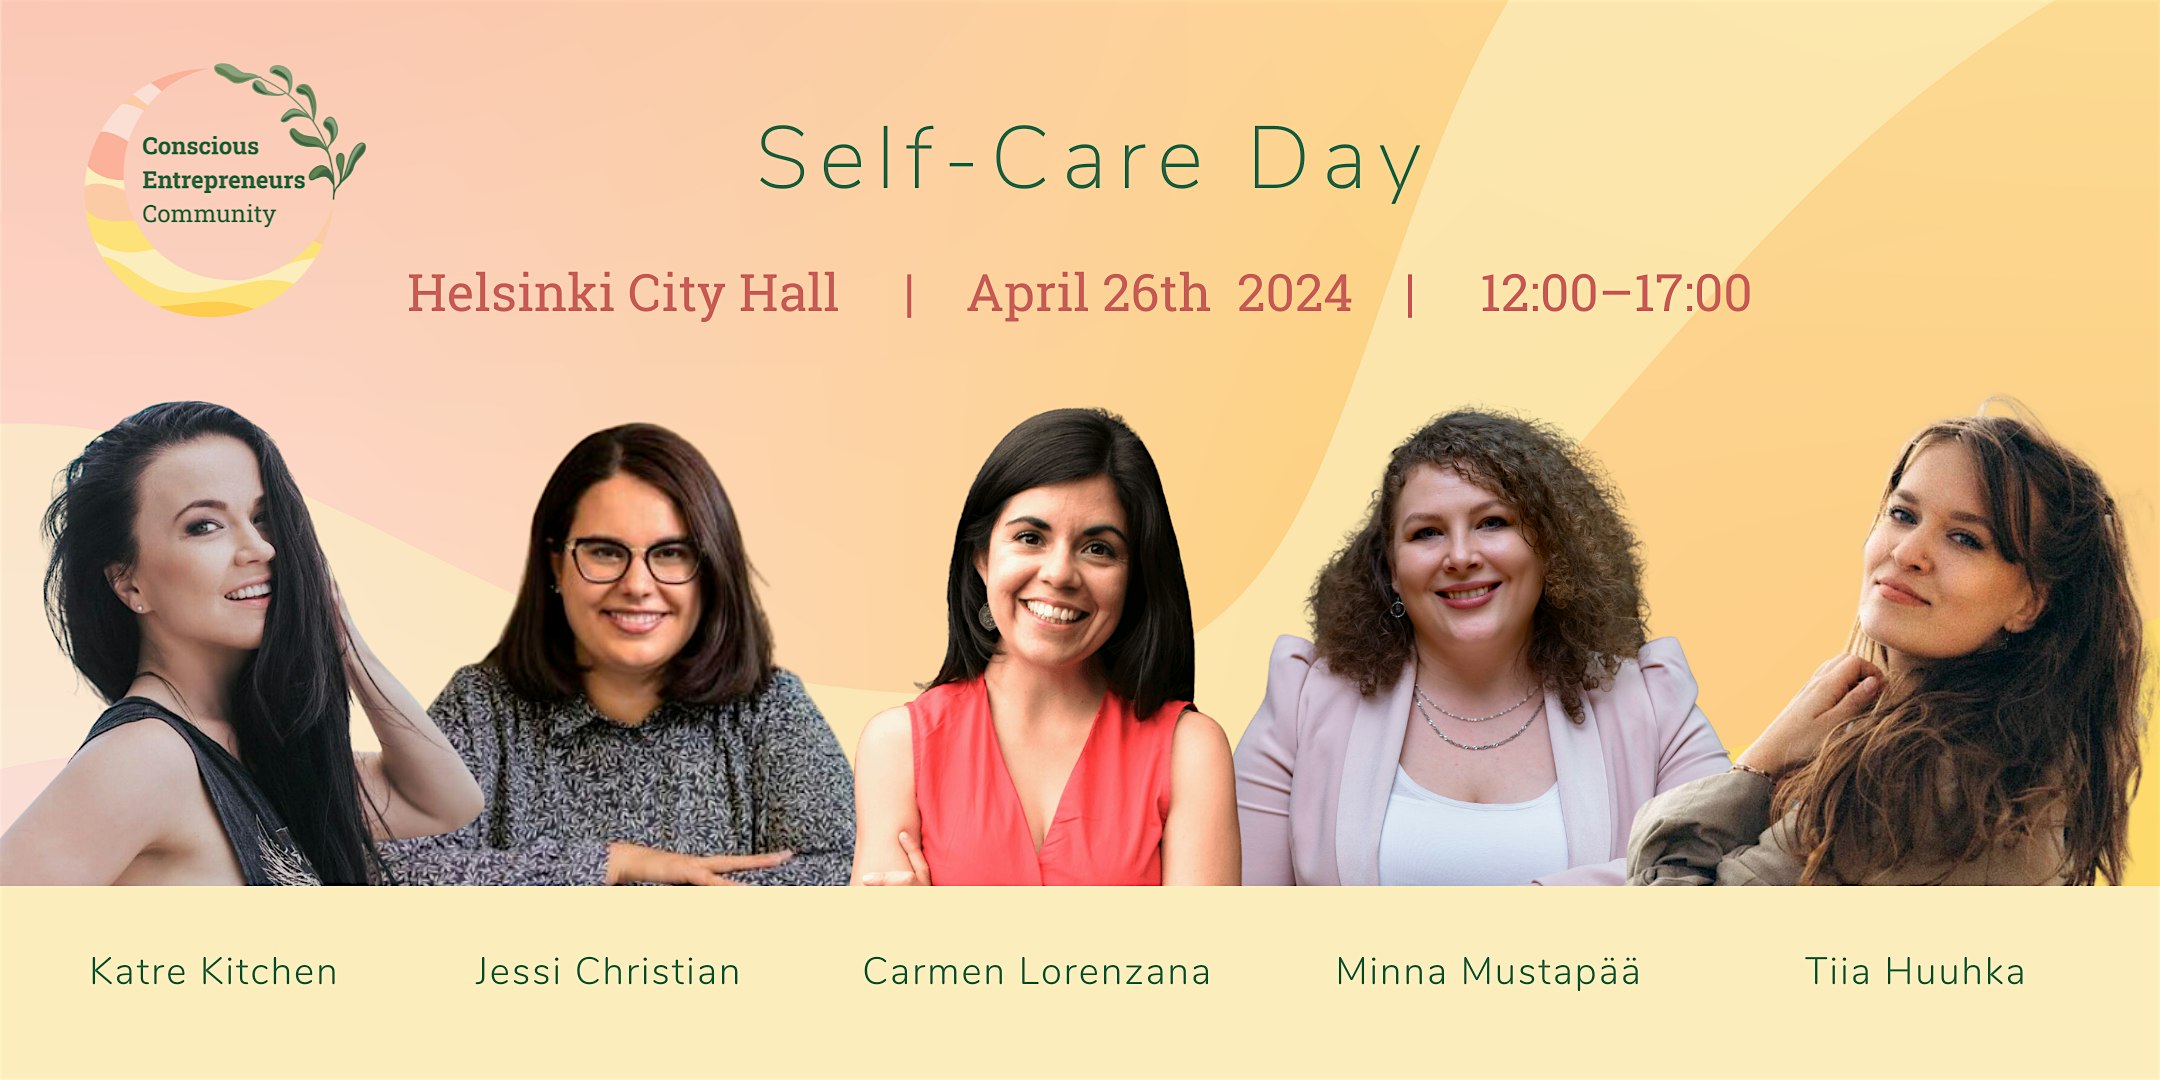 Conscious Entrepreneurs' Self-Care Day